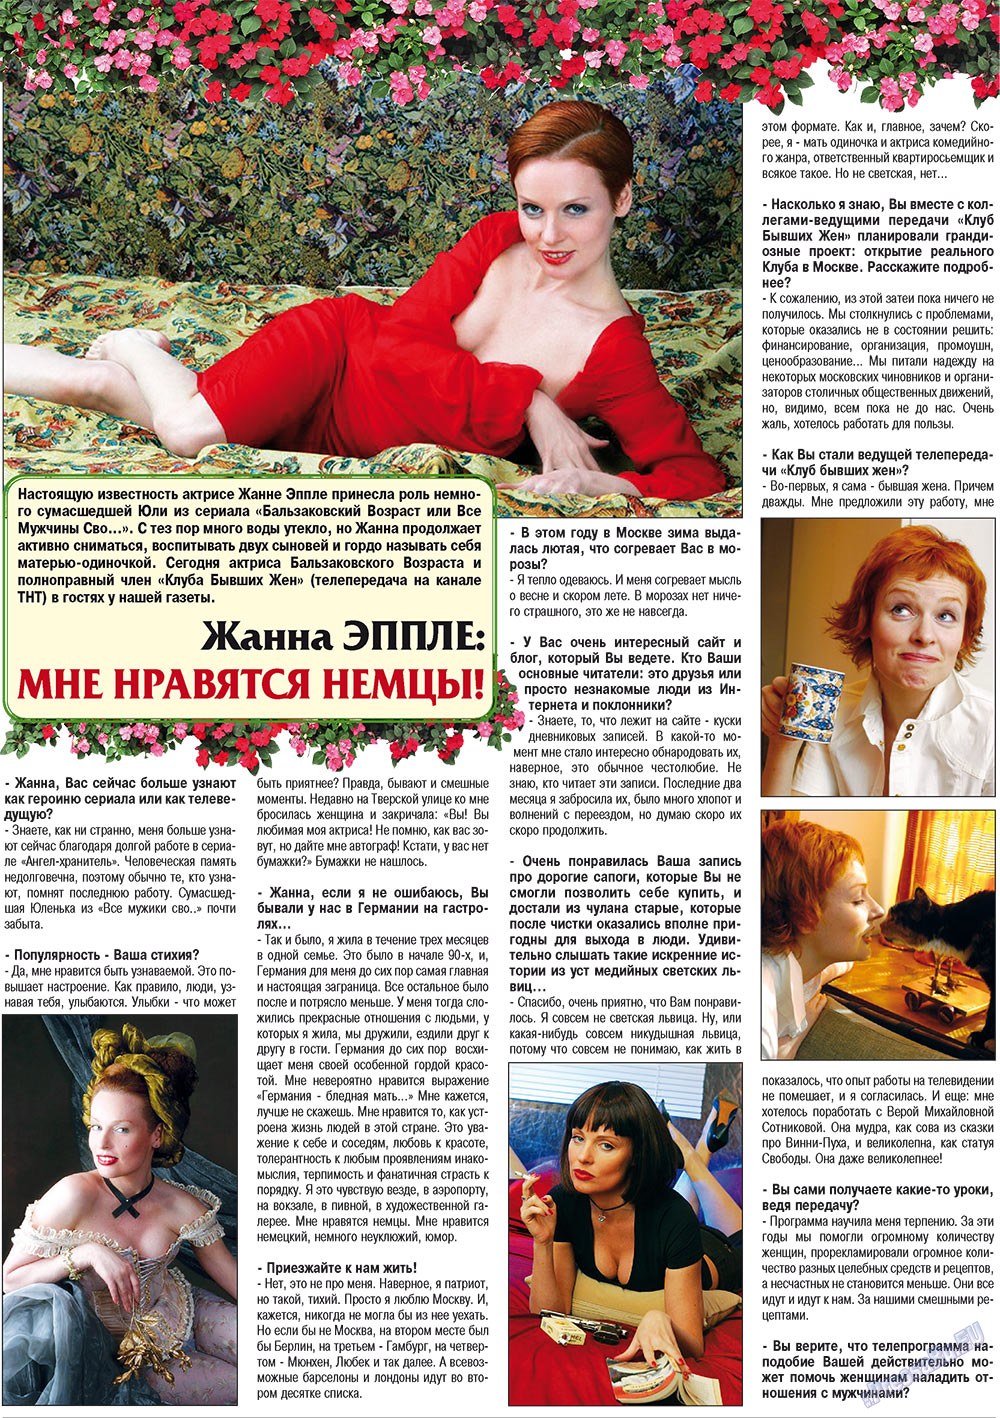 Кругозор плюс!, газета. 2010 №2 стр.26